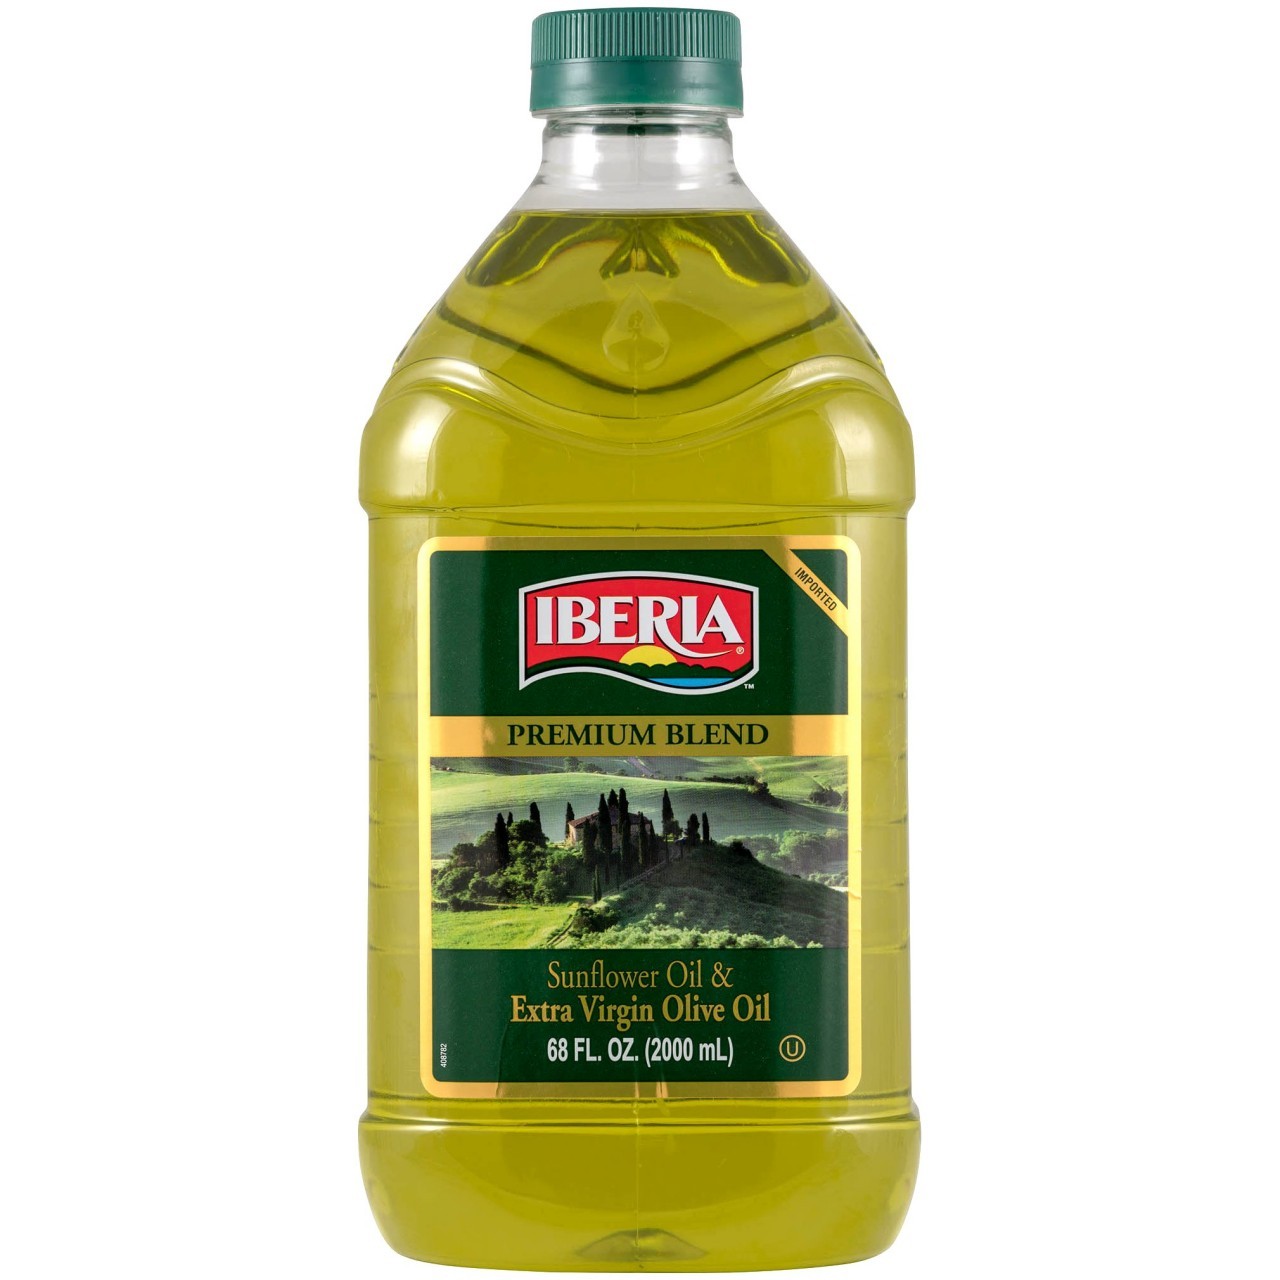 IBERIA SUNFLOWER OIL & OLIVE OIL 2L